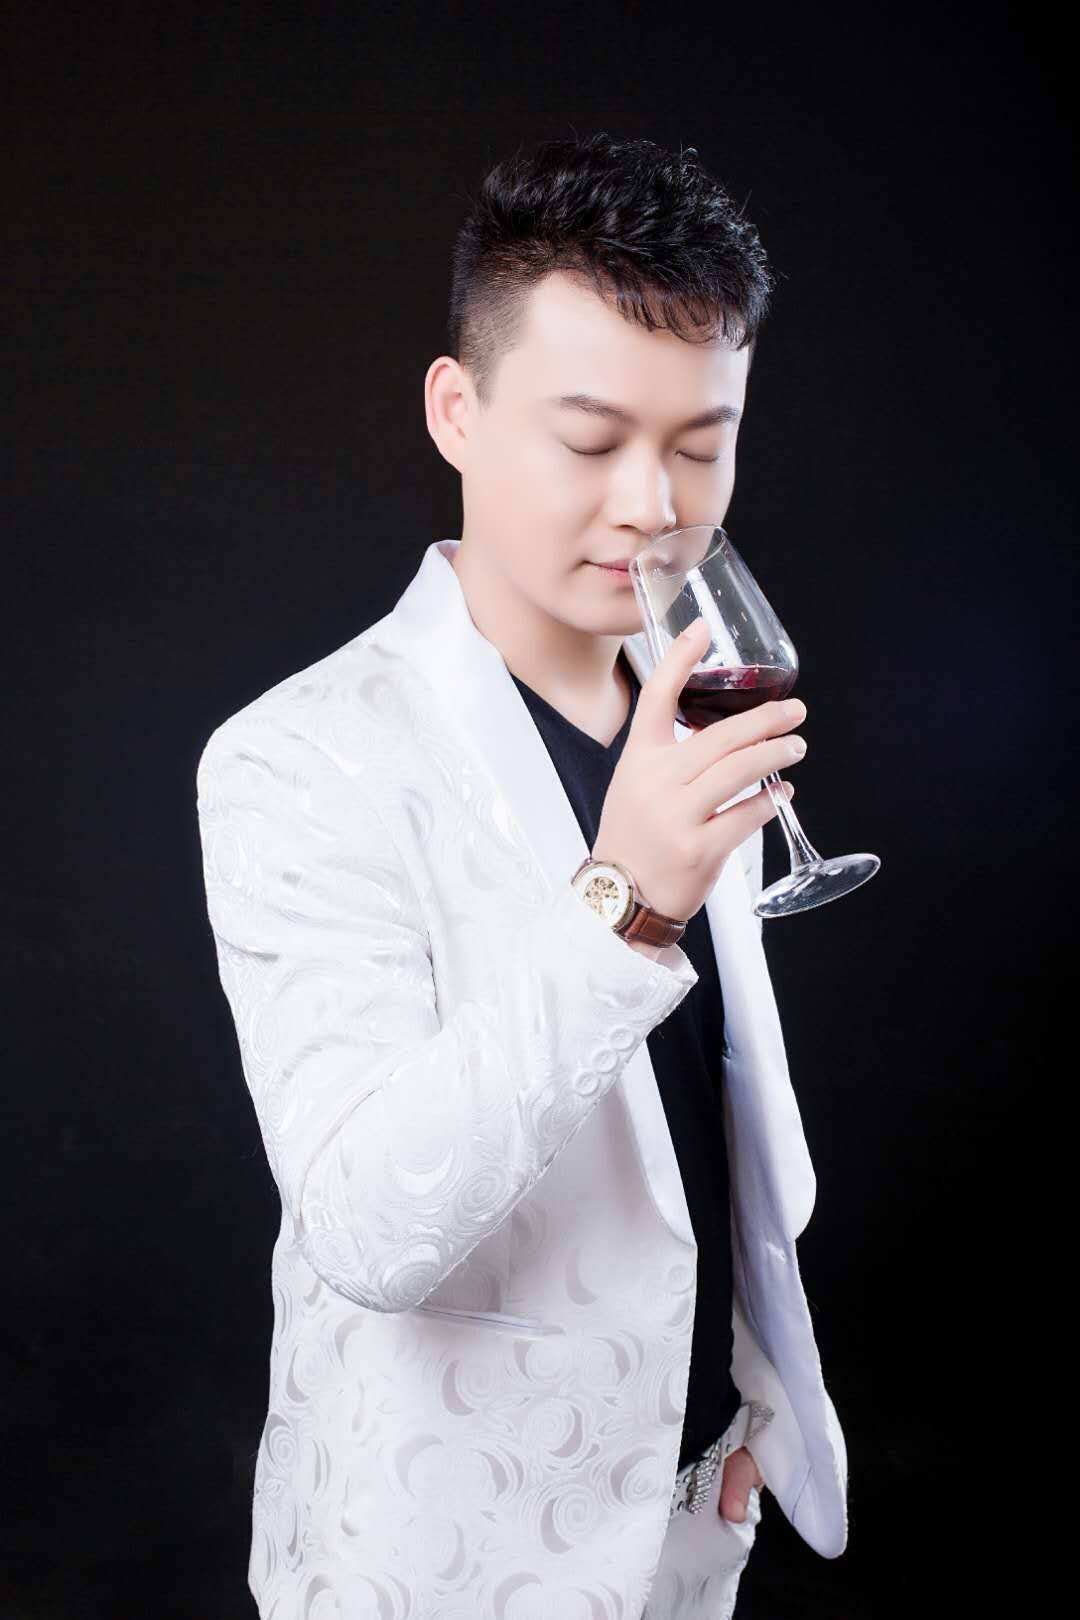 中国大陆华语乐坛流行男歌手 唱作人:王天毅 于2020年6月10日发行